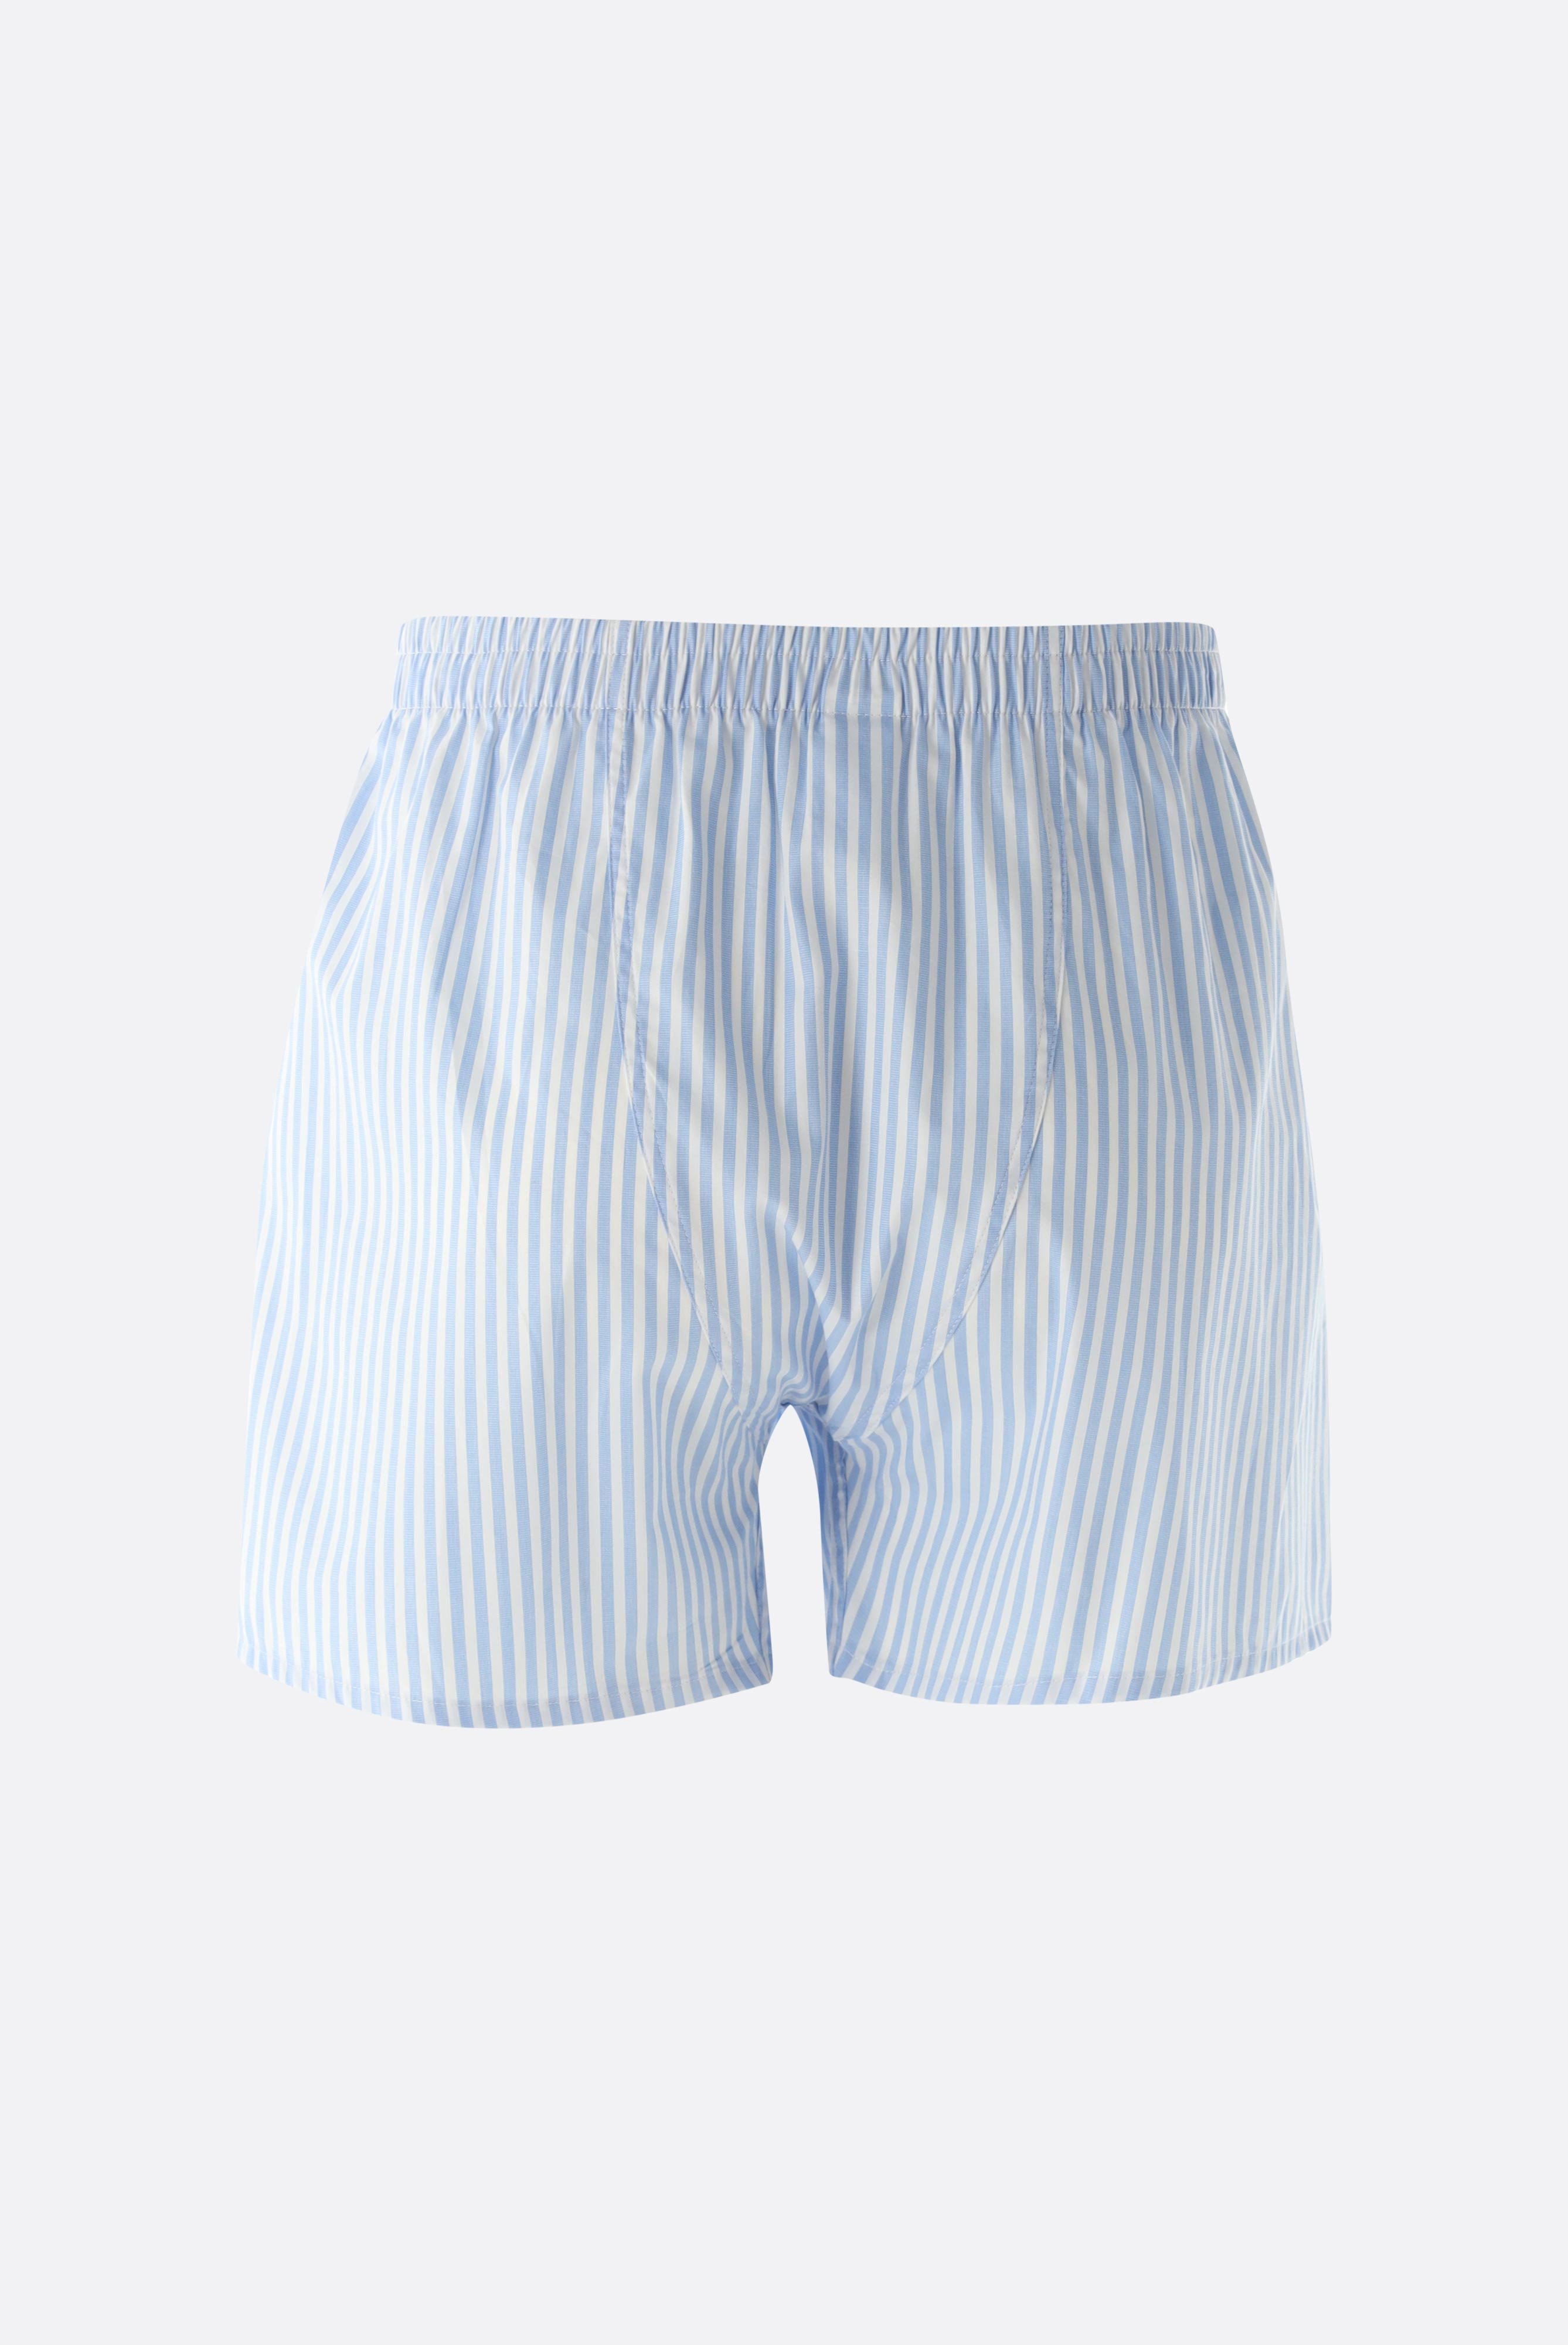 Underwear+Striped Twill Boxershorts+91.1100..151342.730.48